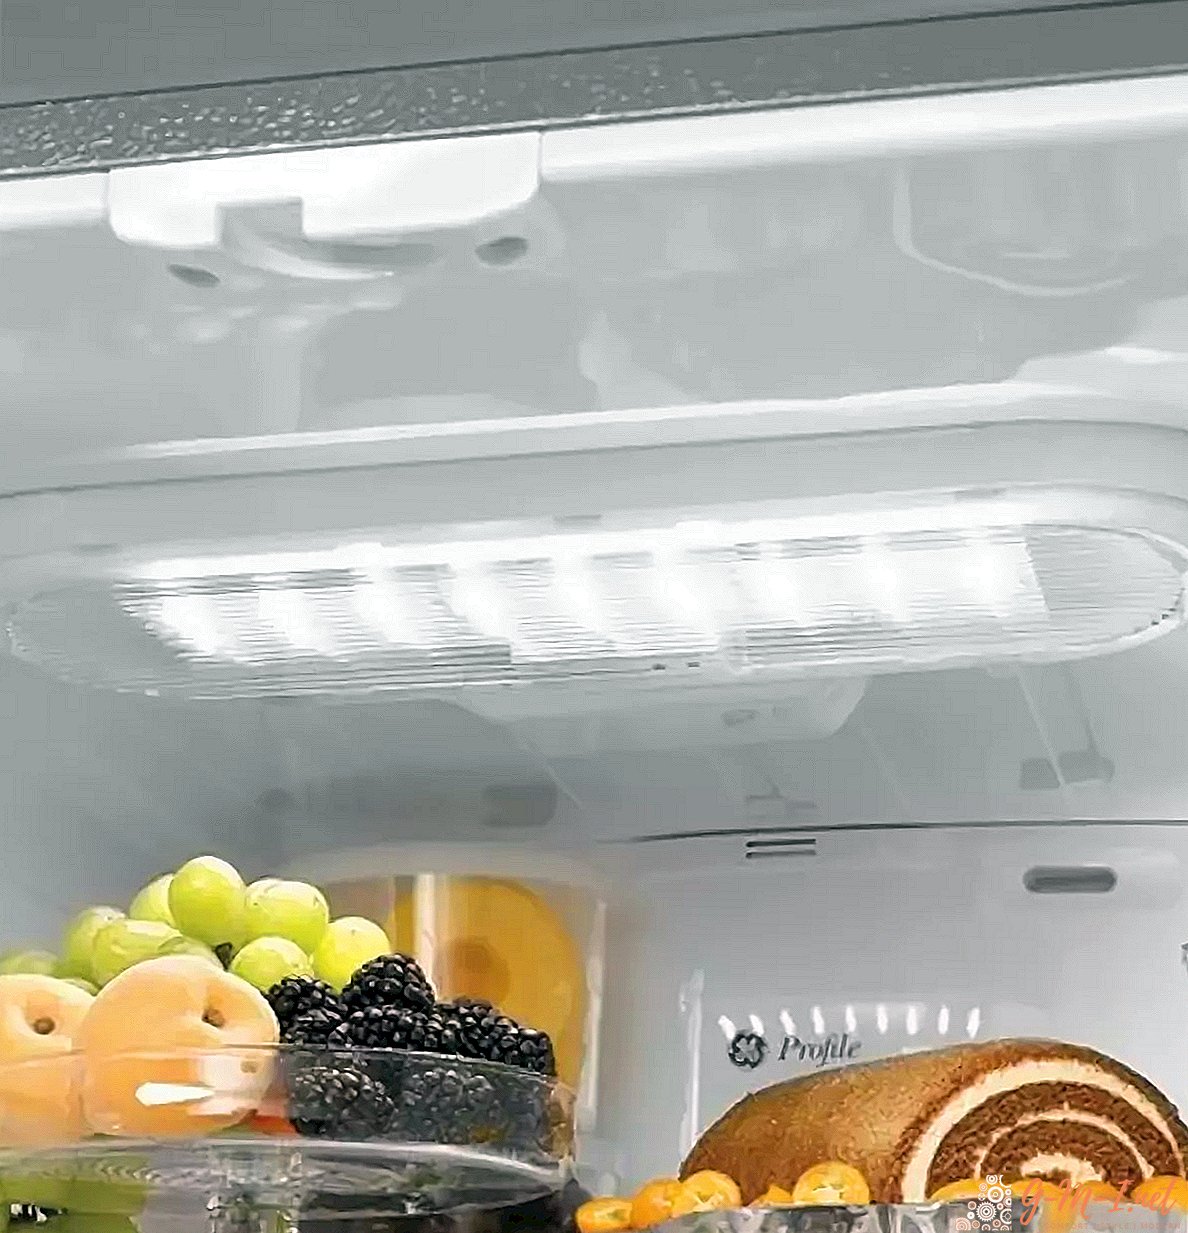 Cómo reemplazar una bombilla en el refrigerador: ¡incluso una mujer puede manejarlo!